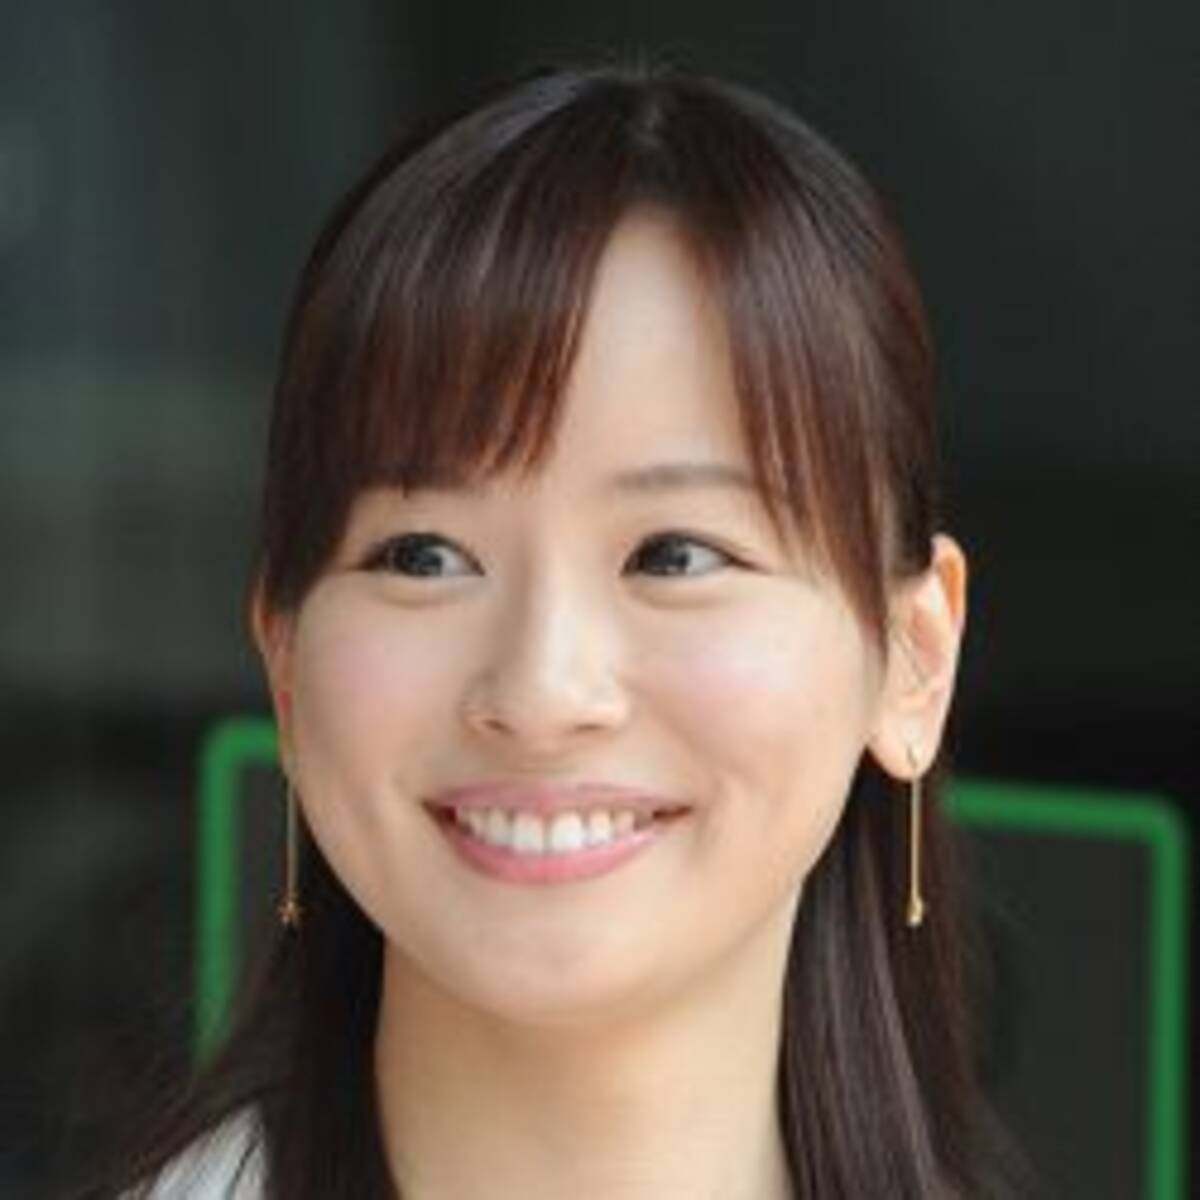 皆藤愛子 37歳誕生日で上がった 劣化ゼロ 驚きの声とオトコ関係の大疑問 21年2月1日 エキサイトニュース